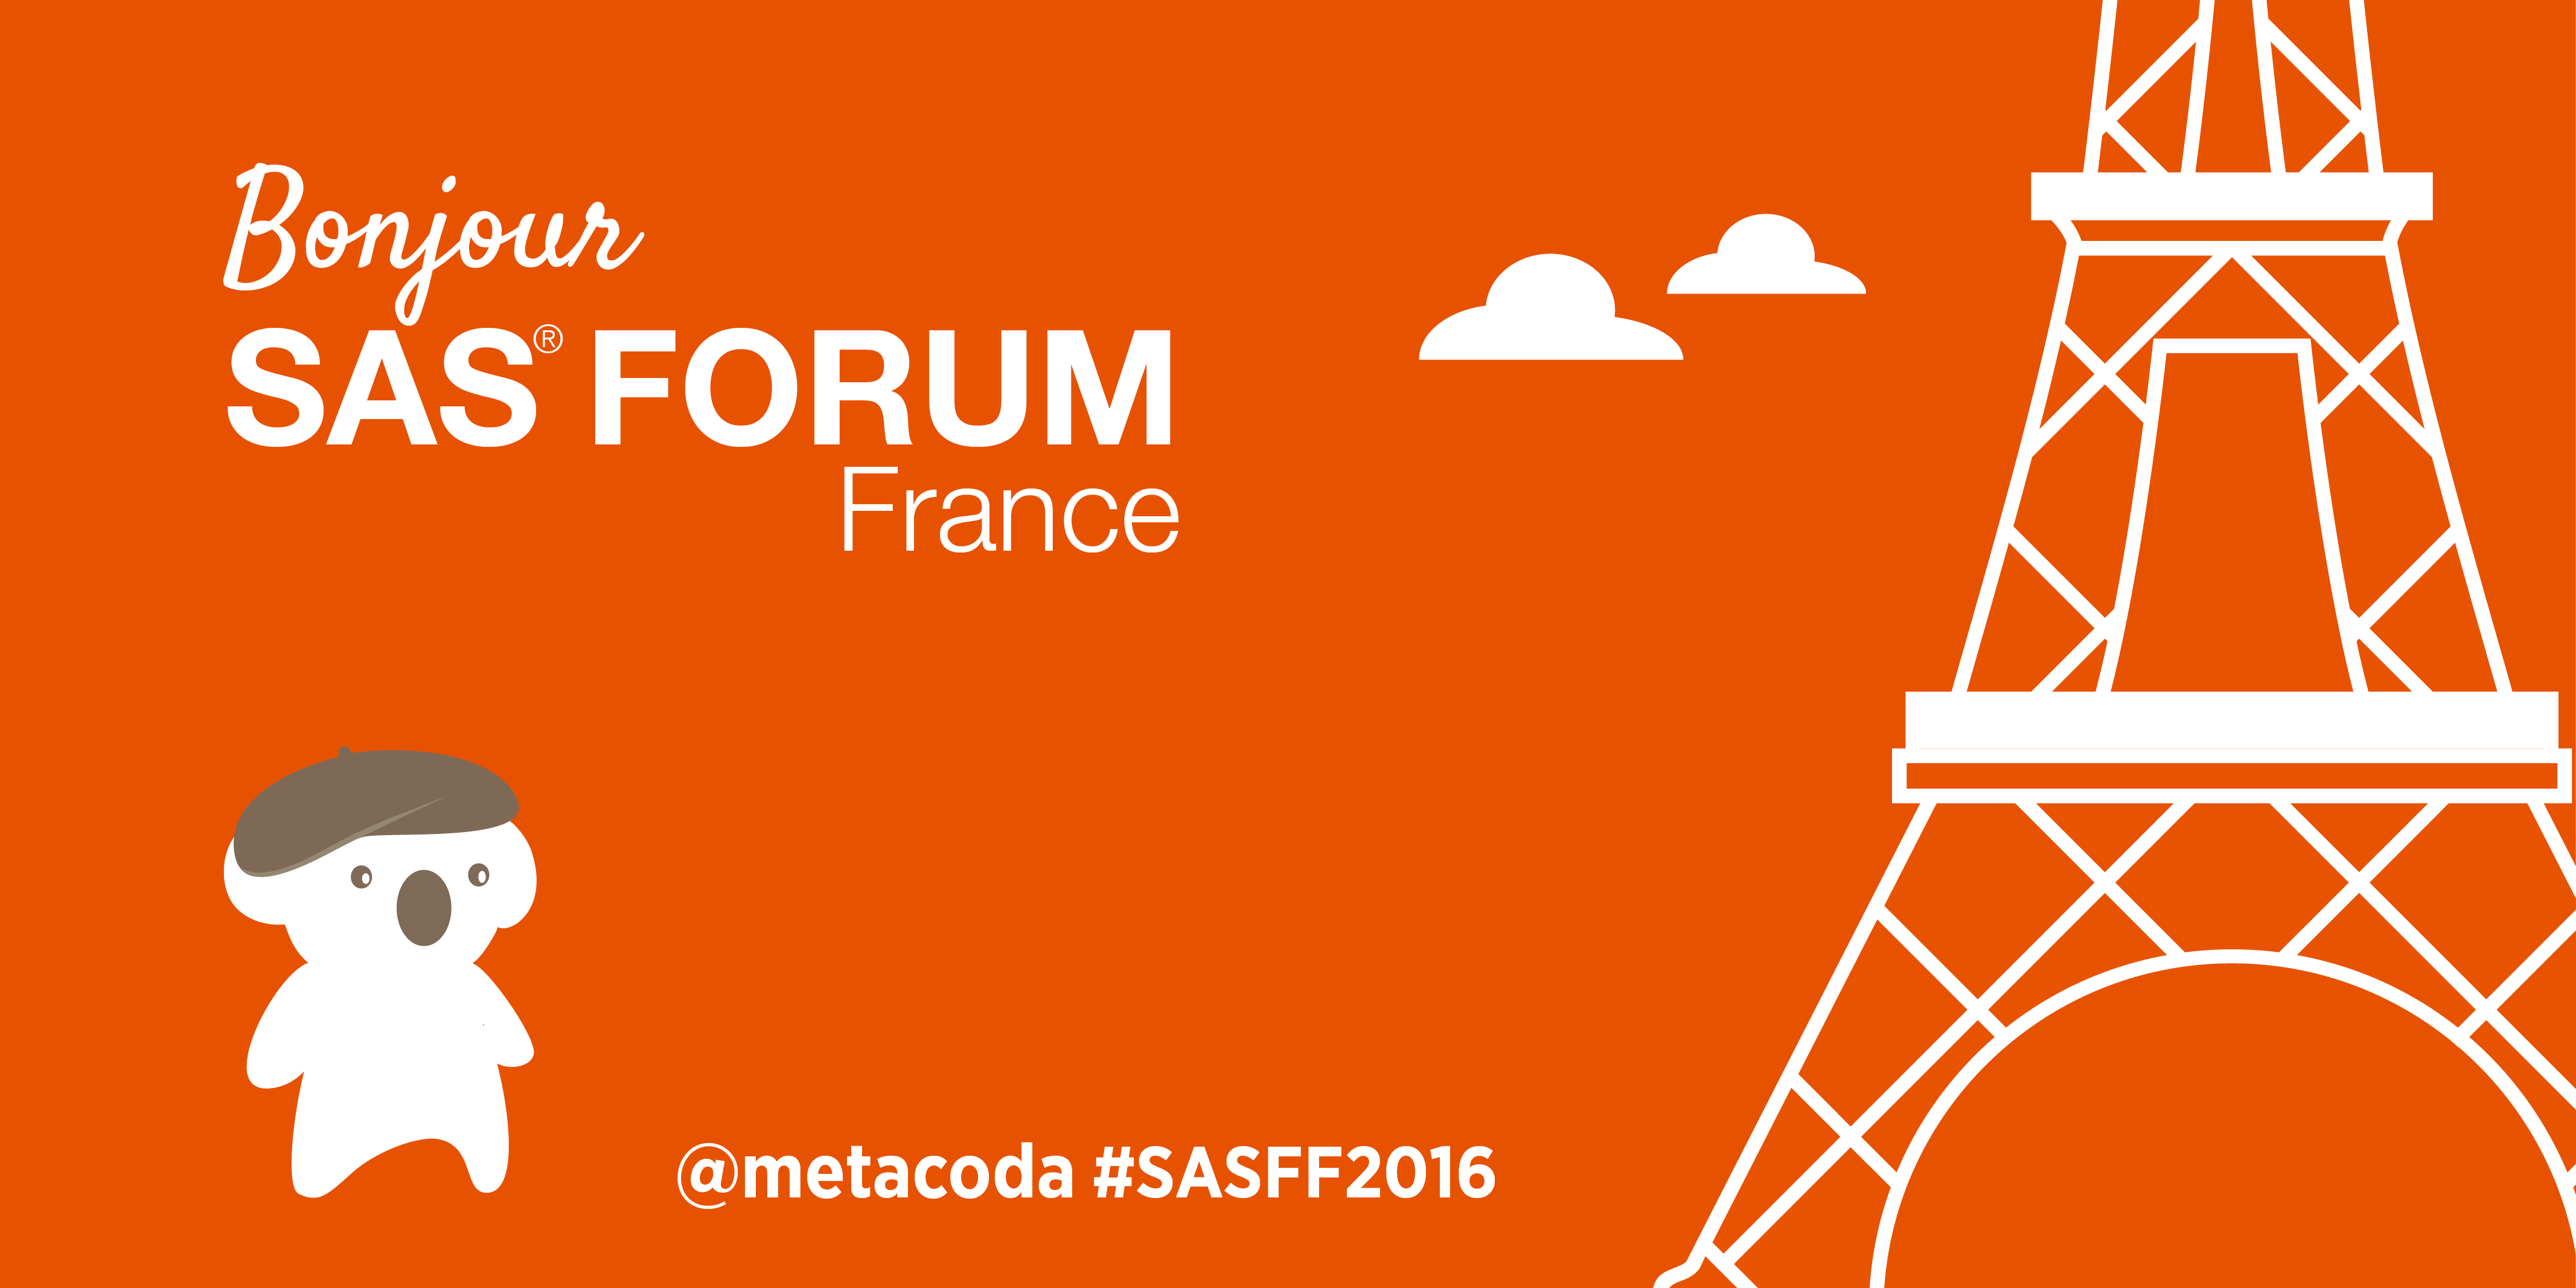 Metacoda Koalas SAS Forum 2016 France Social